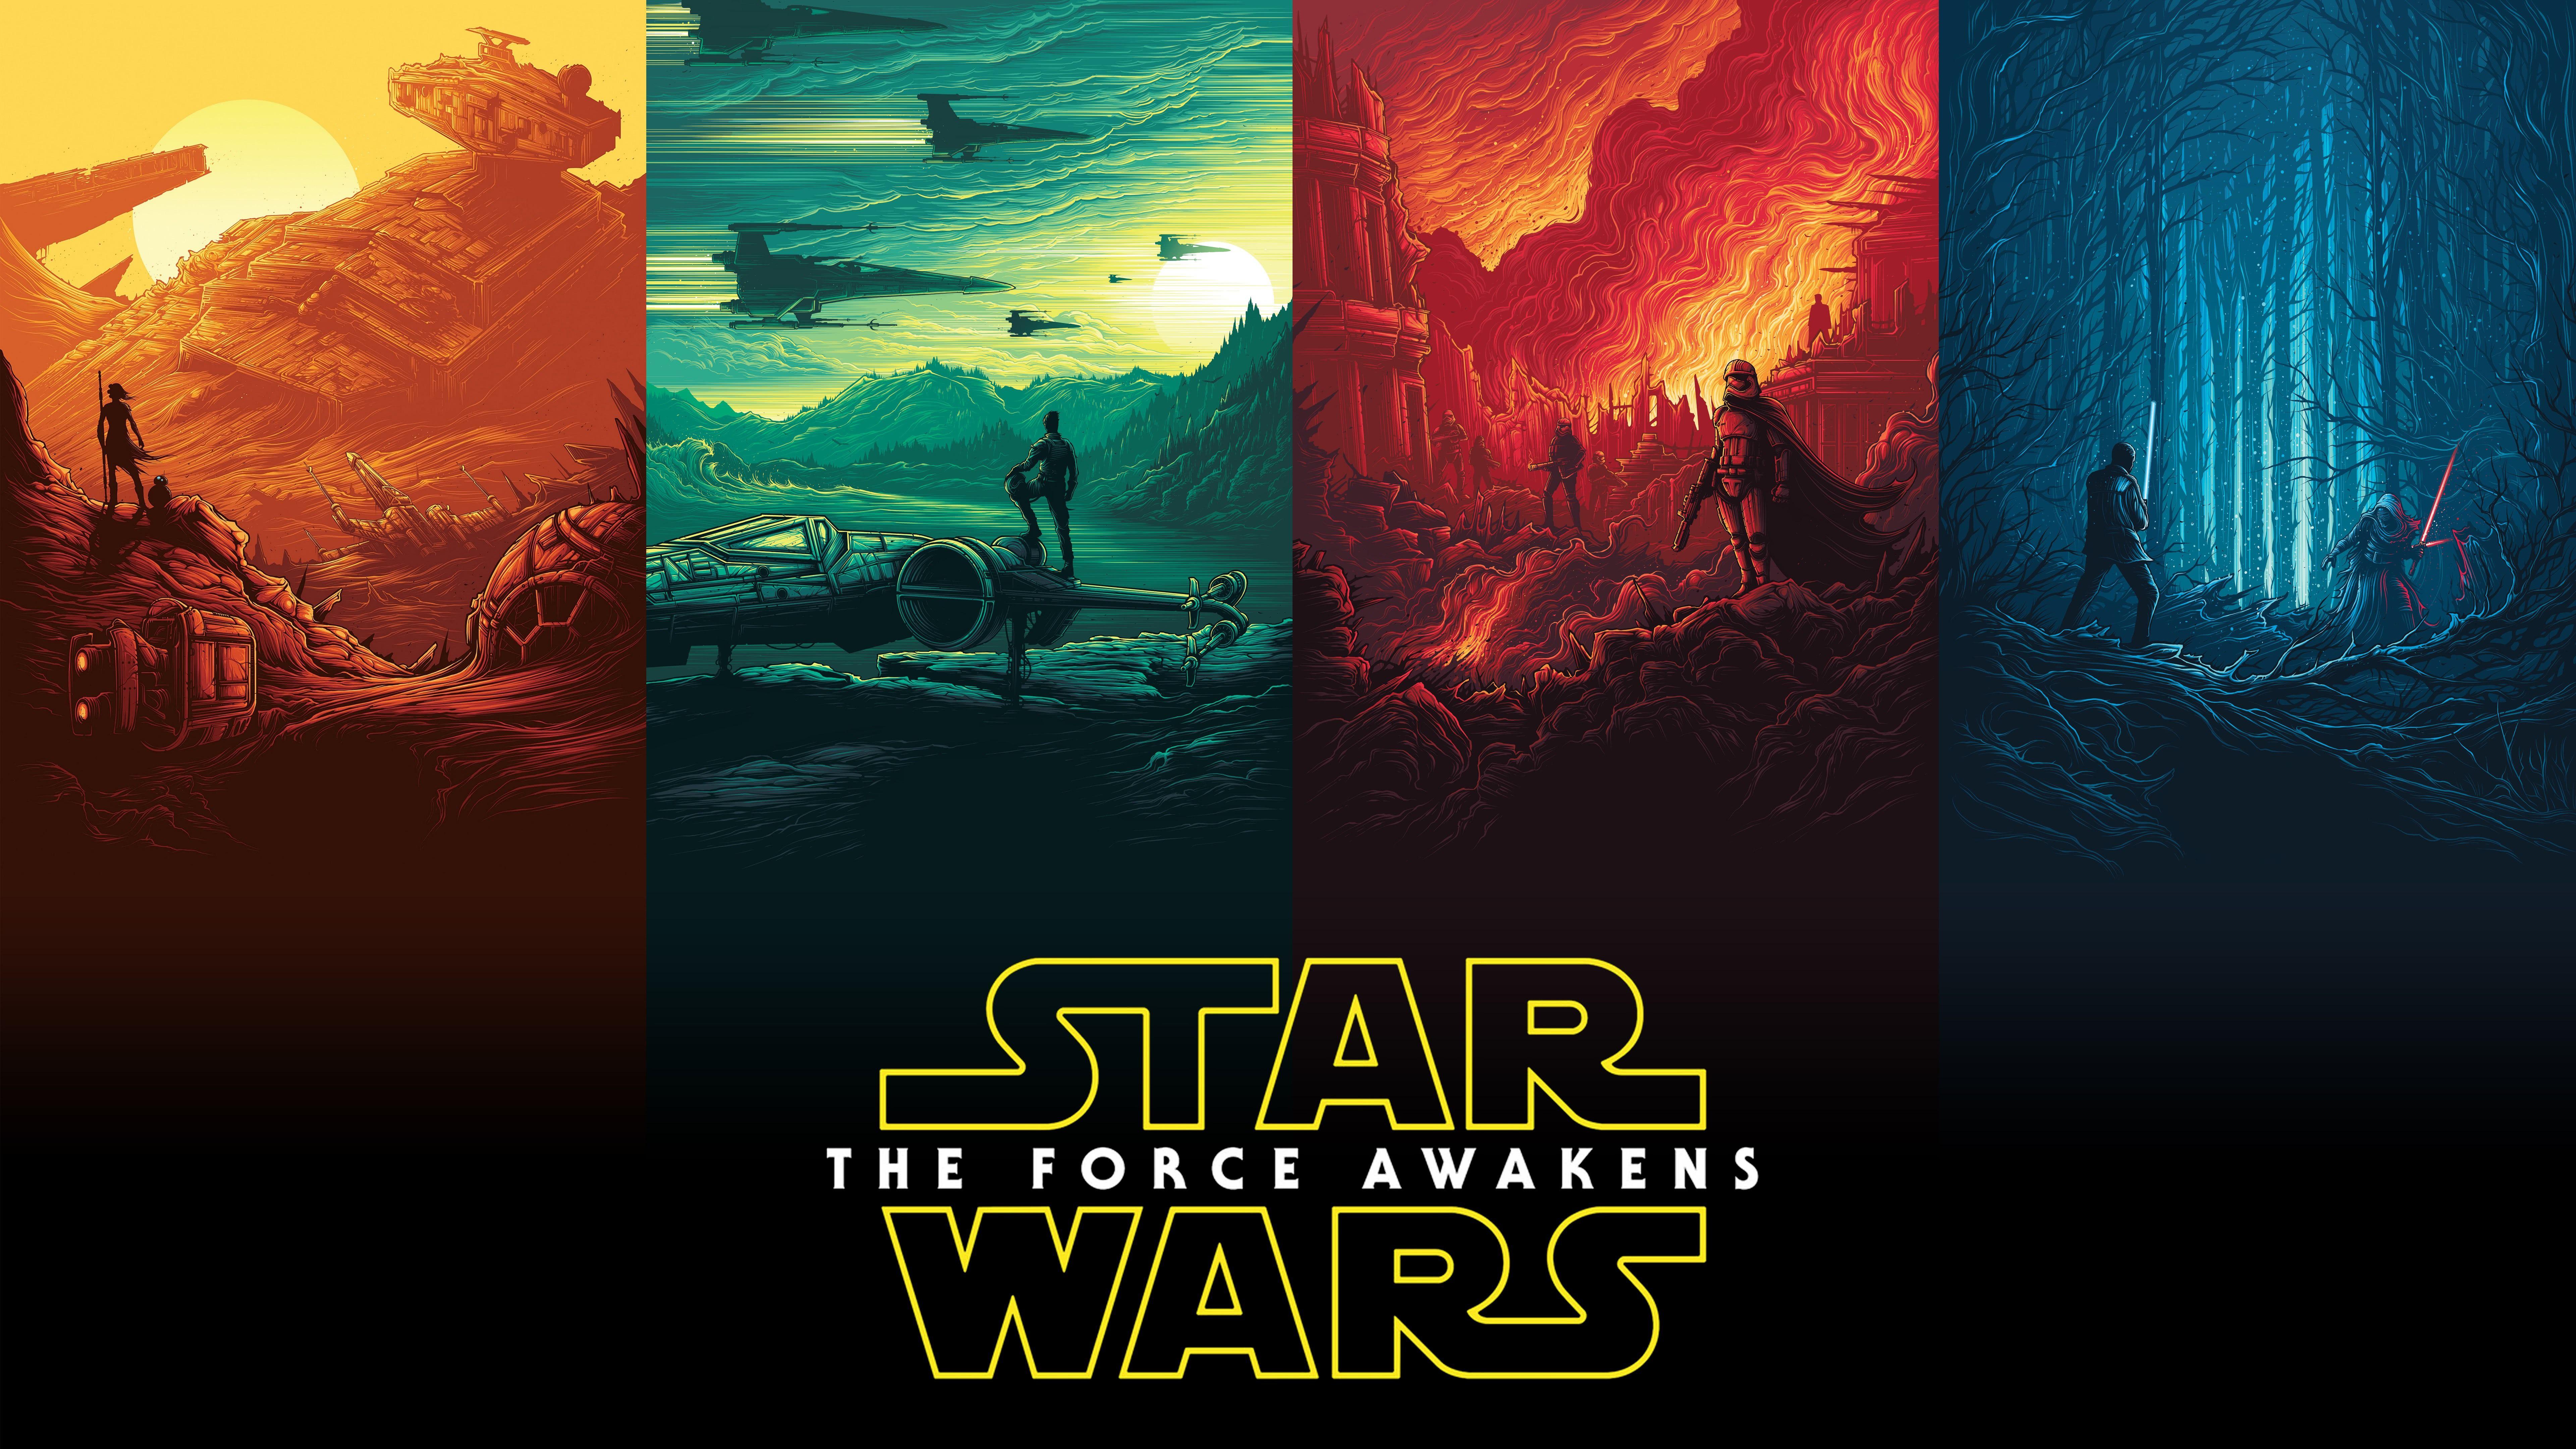 Star Wars Rey Finn Kylo Ren Han Solo Luke Skywalker UHD 8K Wallpaper